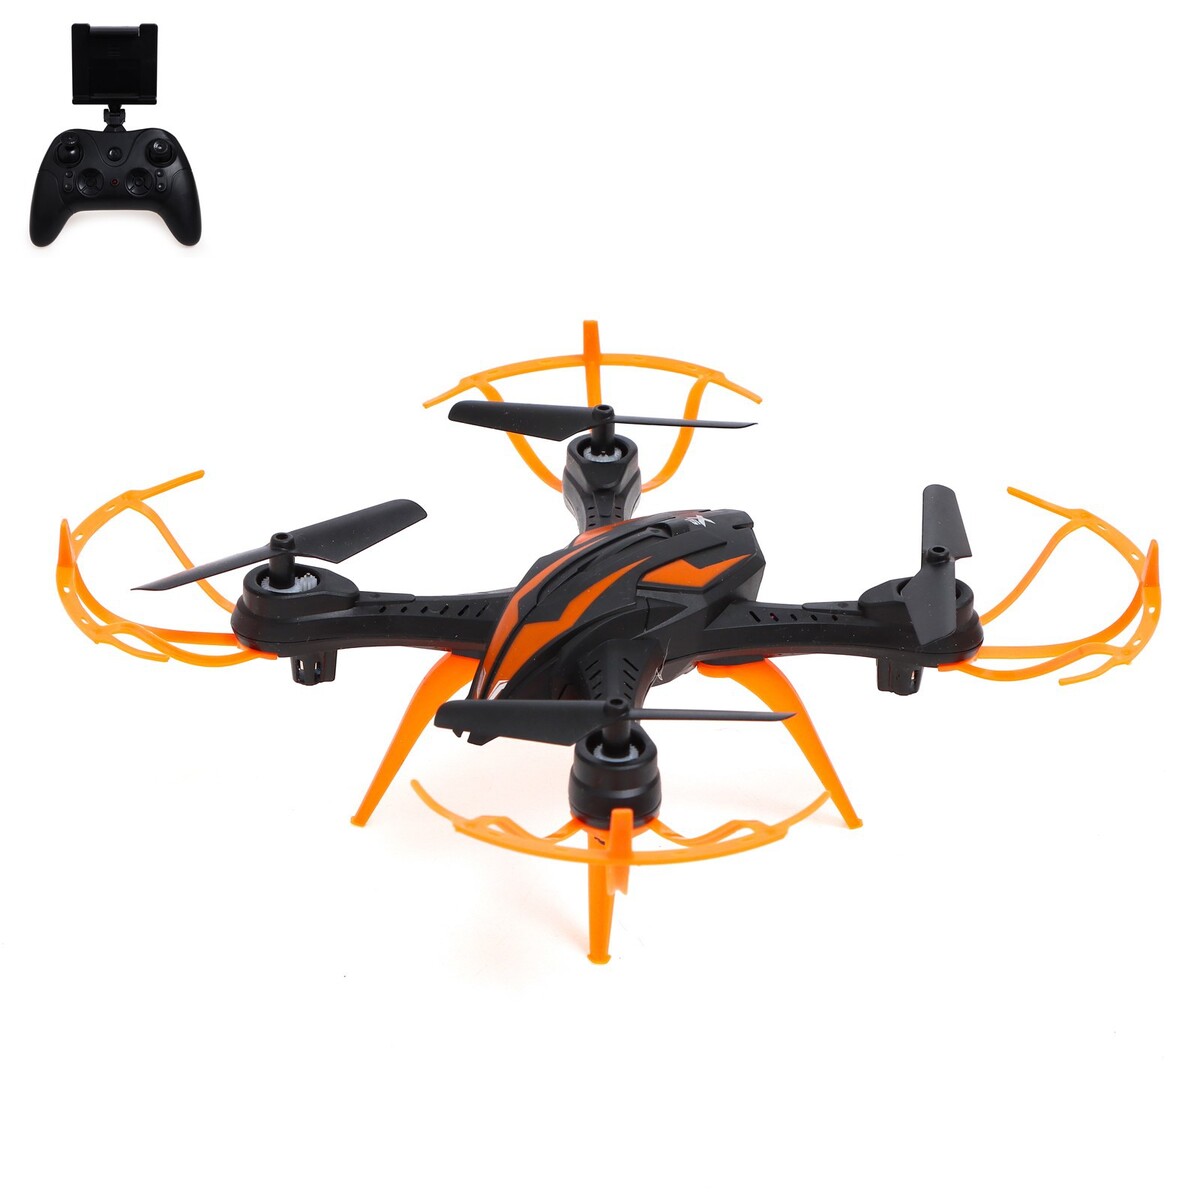 Квадрокоптер lh-x15wf, камера, передача изображения на смартфон, wi-fi, цвет черно-оранжевый кот кирилл и смартфон